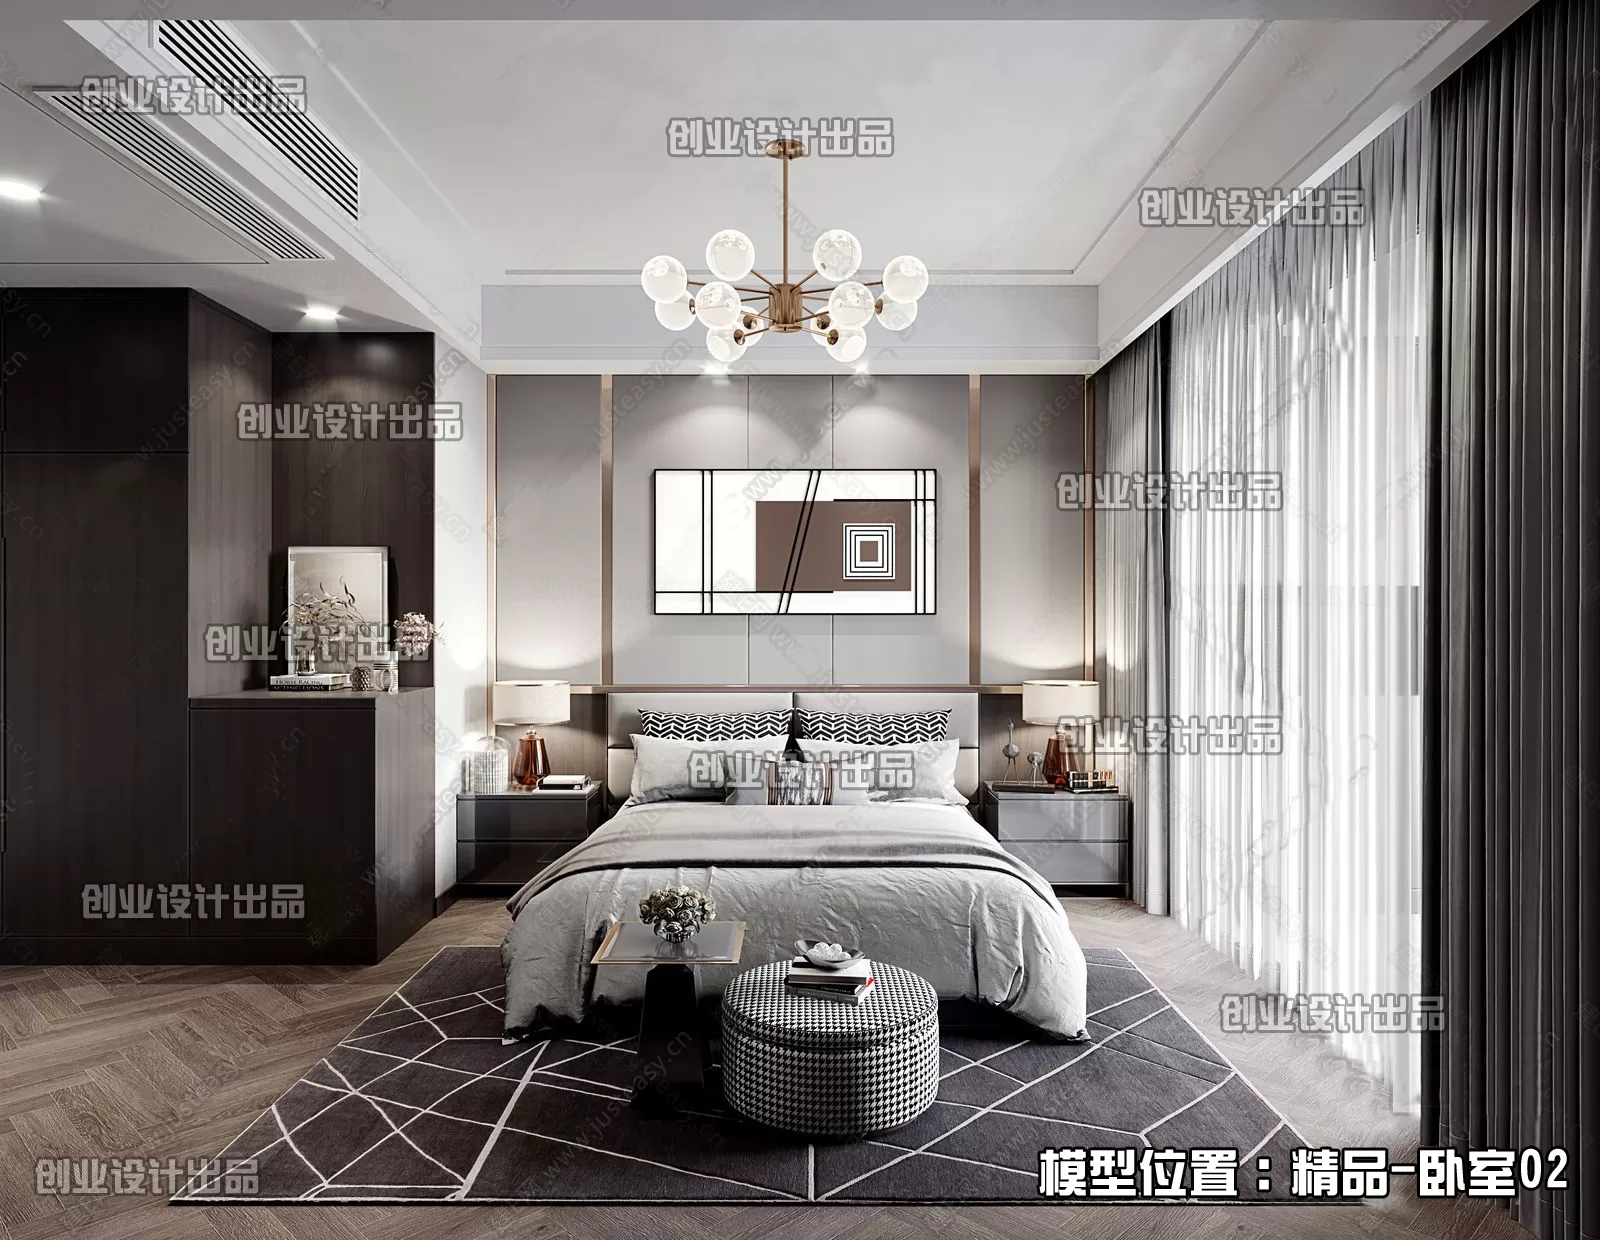 Bedroom – Modern Interior Design – 3D Models – 148